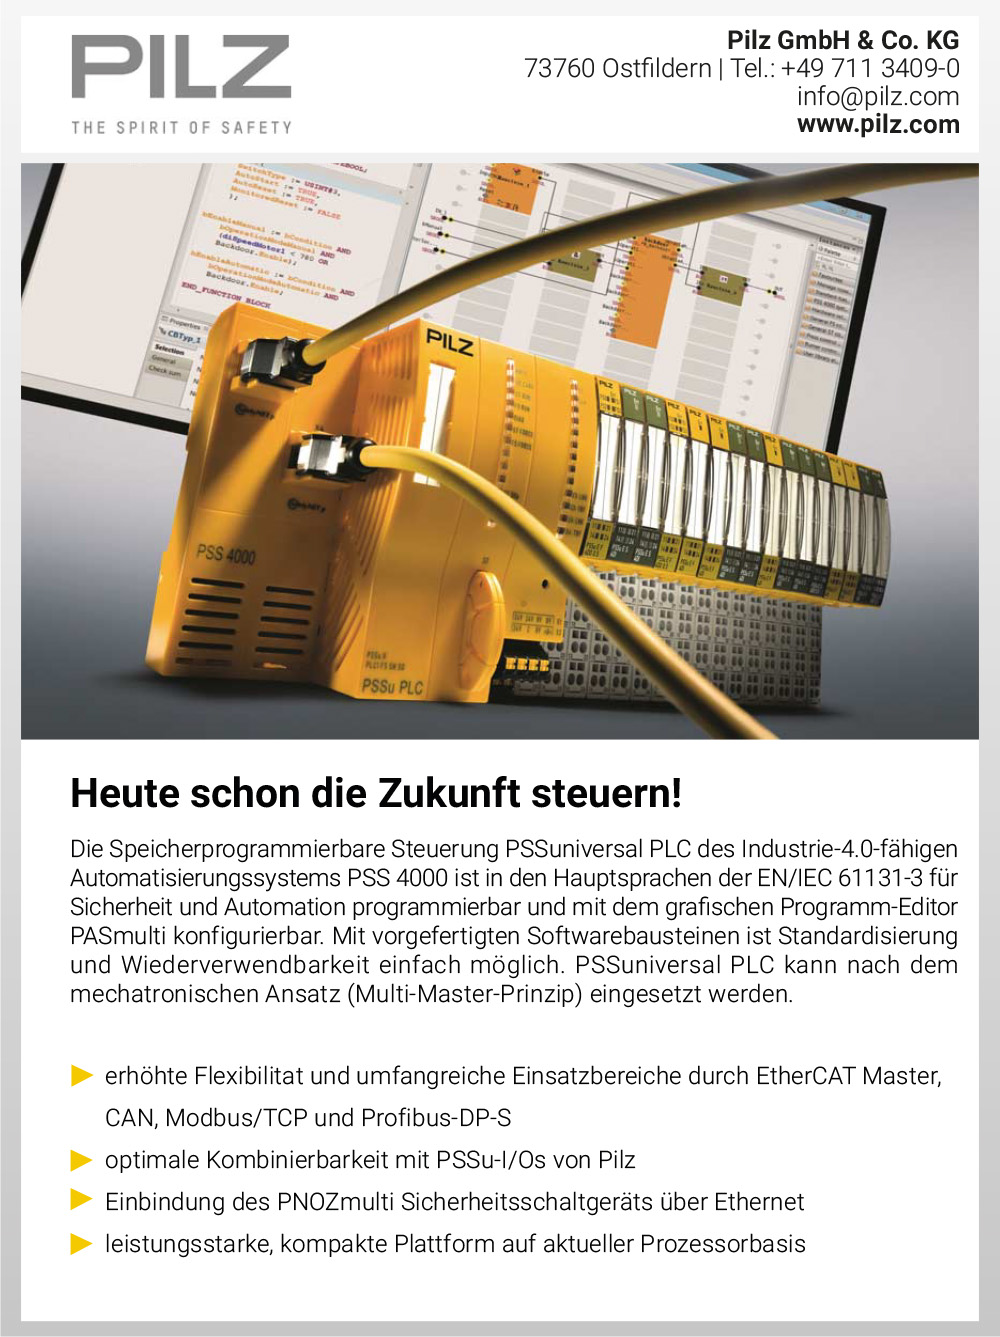 Produktübersicht – Pilz GmbH & Co. KG